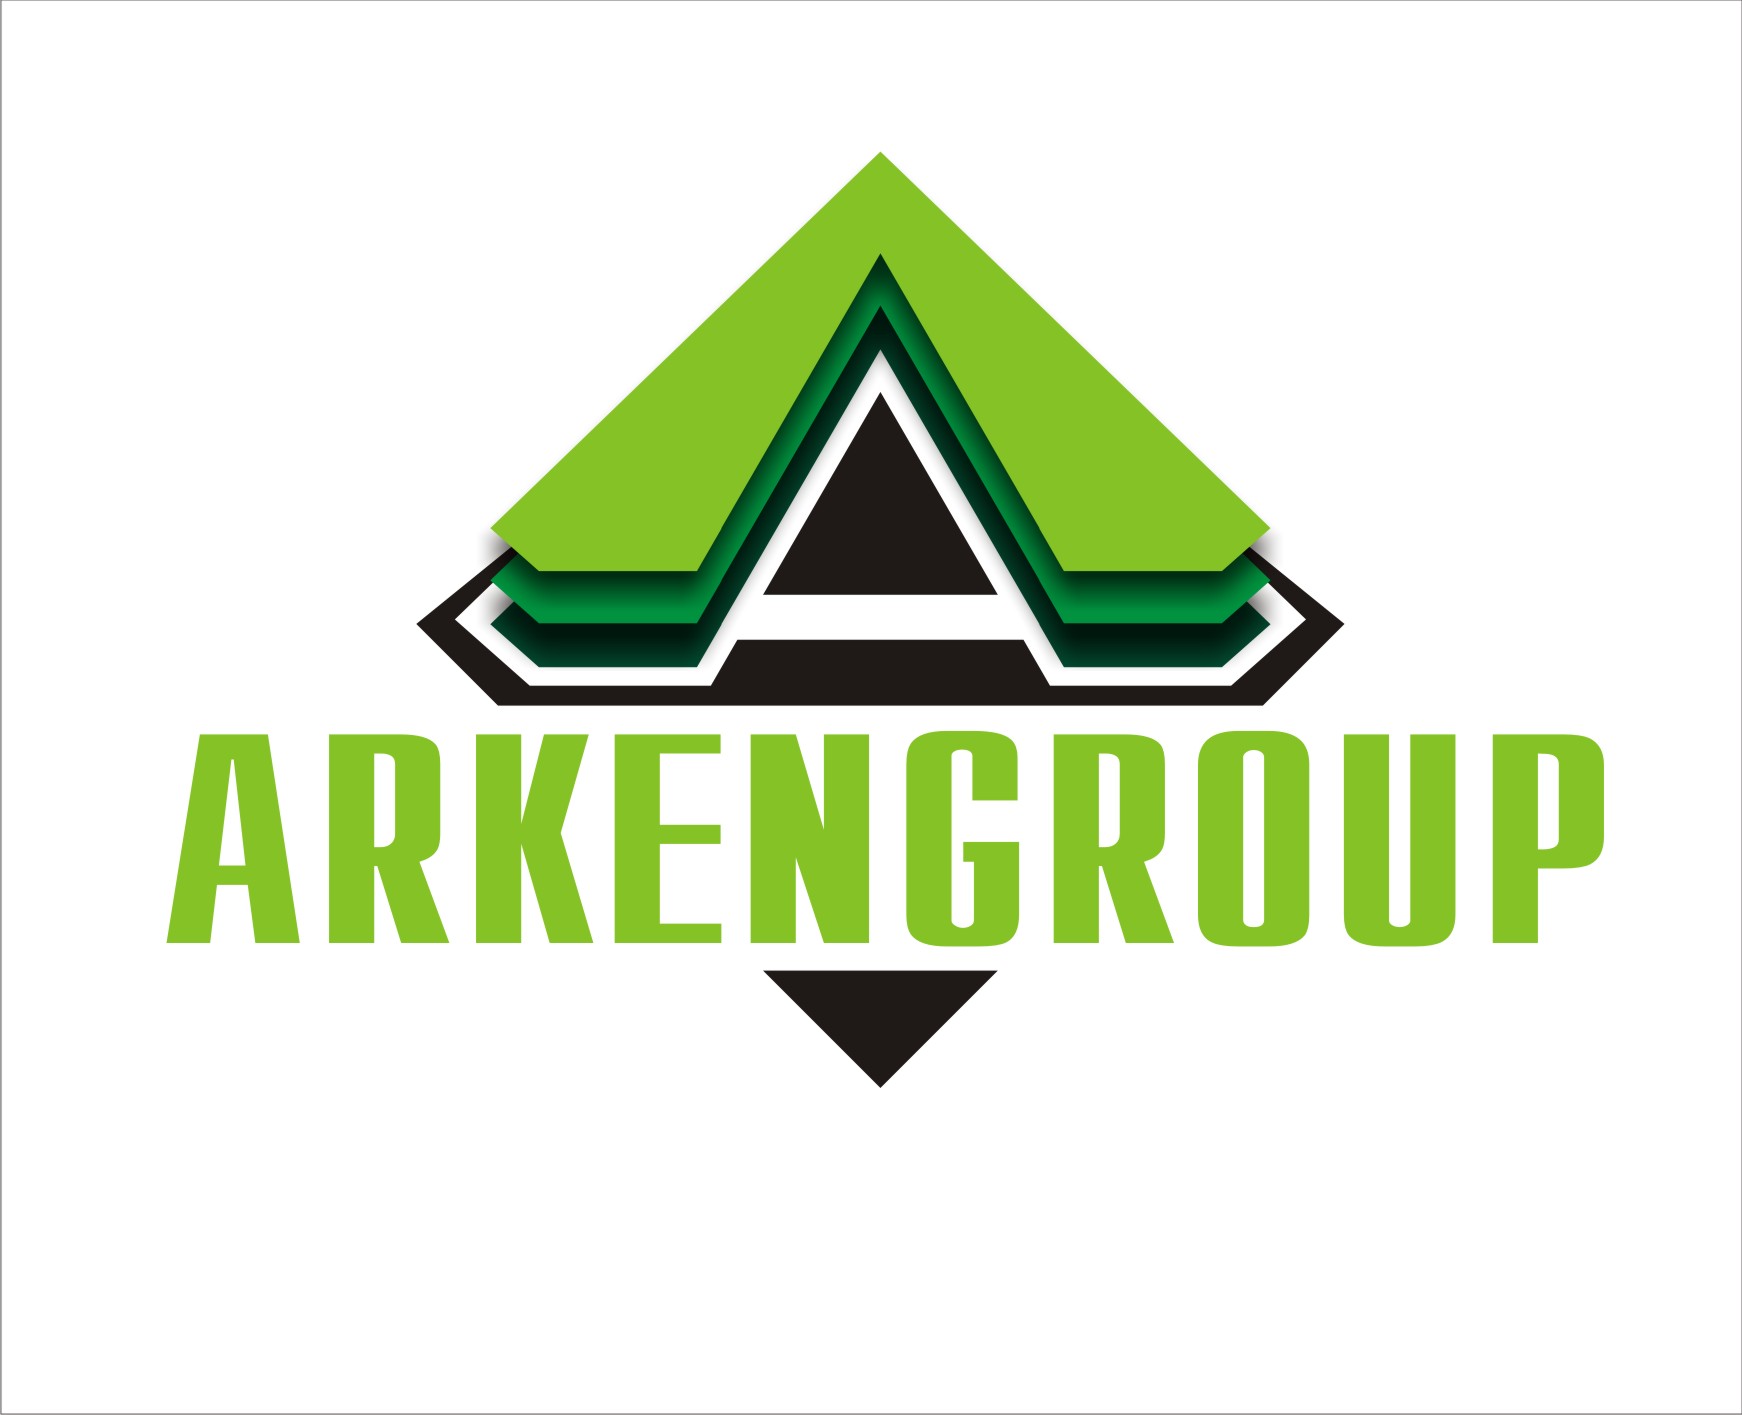 ArkenGroup